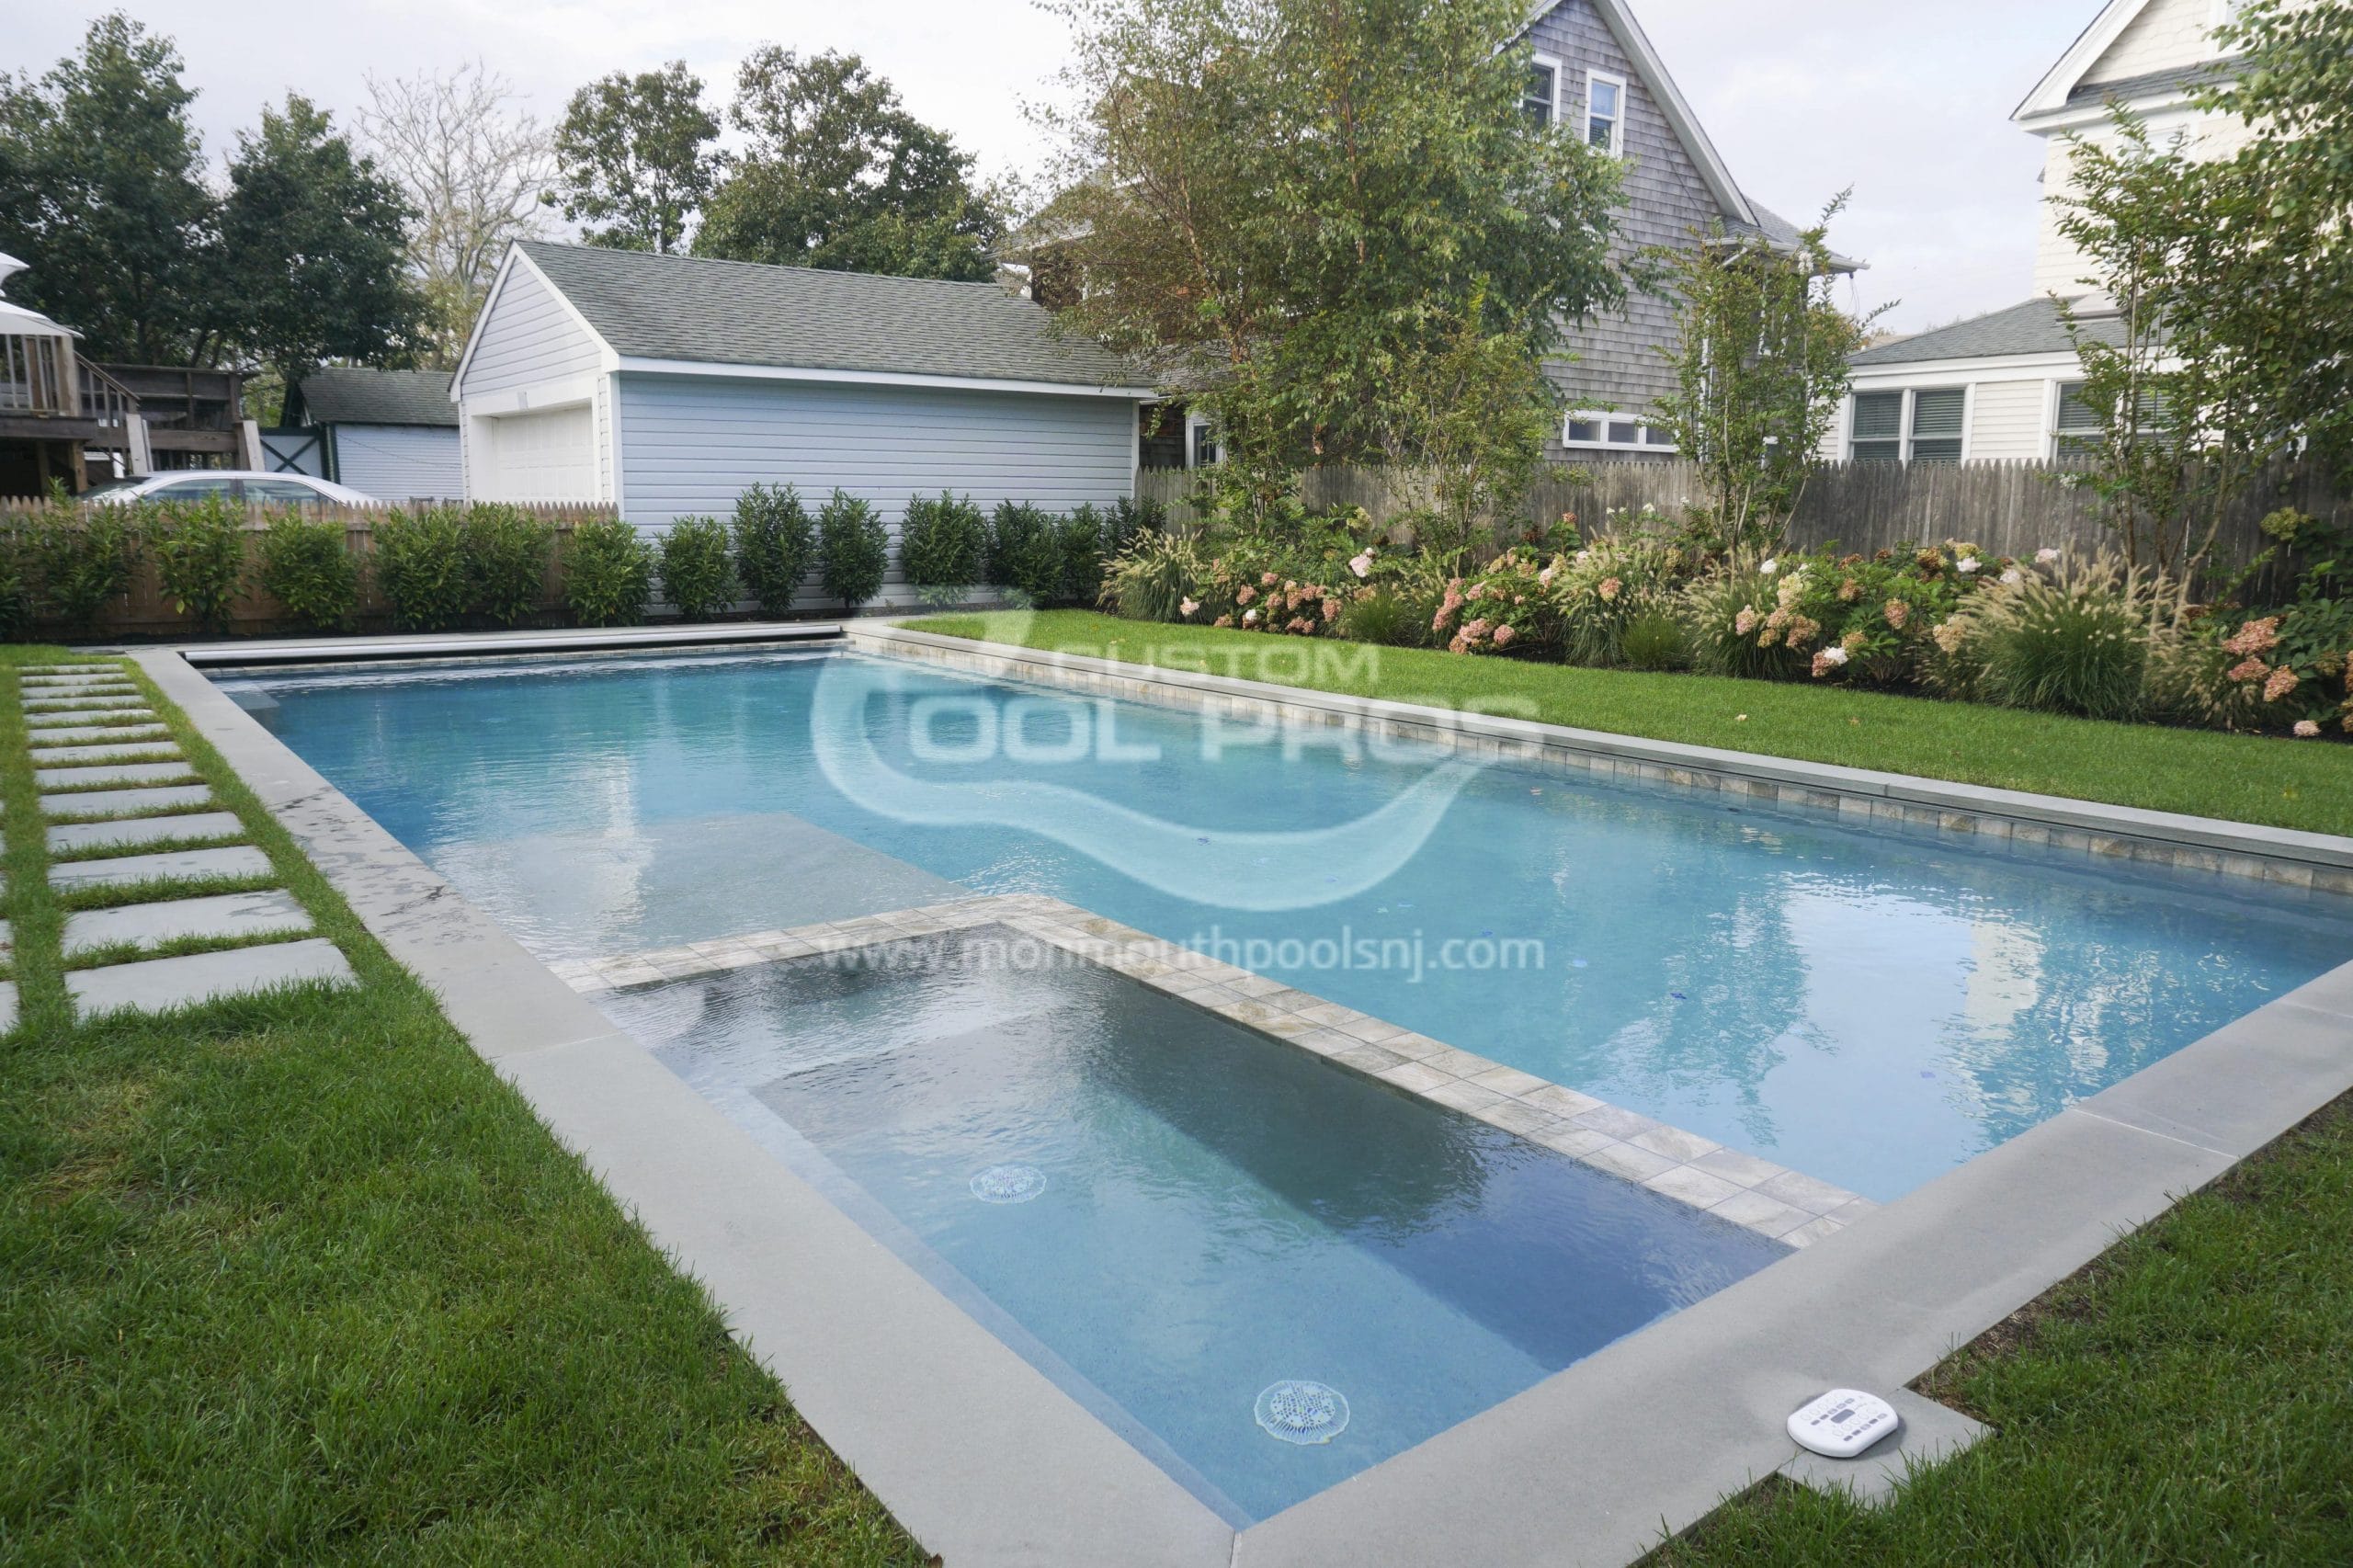 Pool Builders in New Jersey – Custom Pool Pros